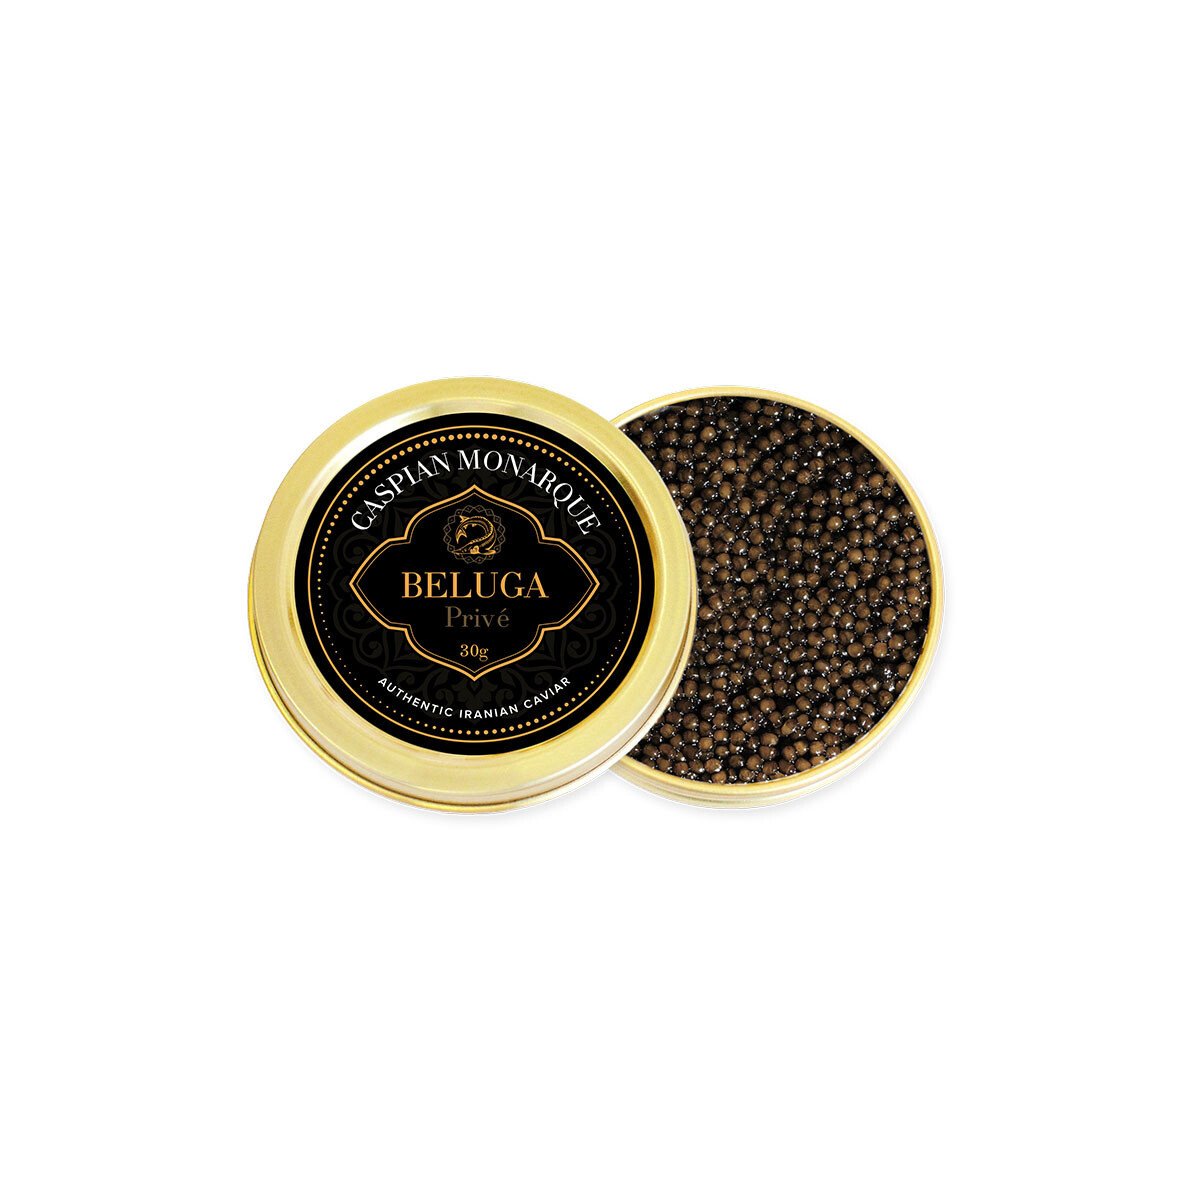 Caspian Monarque Beluga Prive Caviar